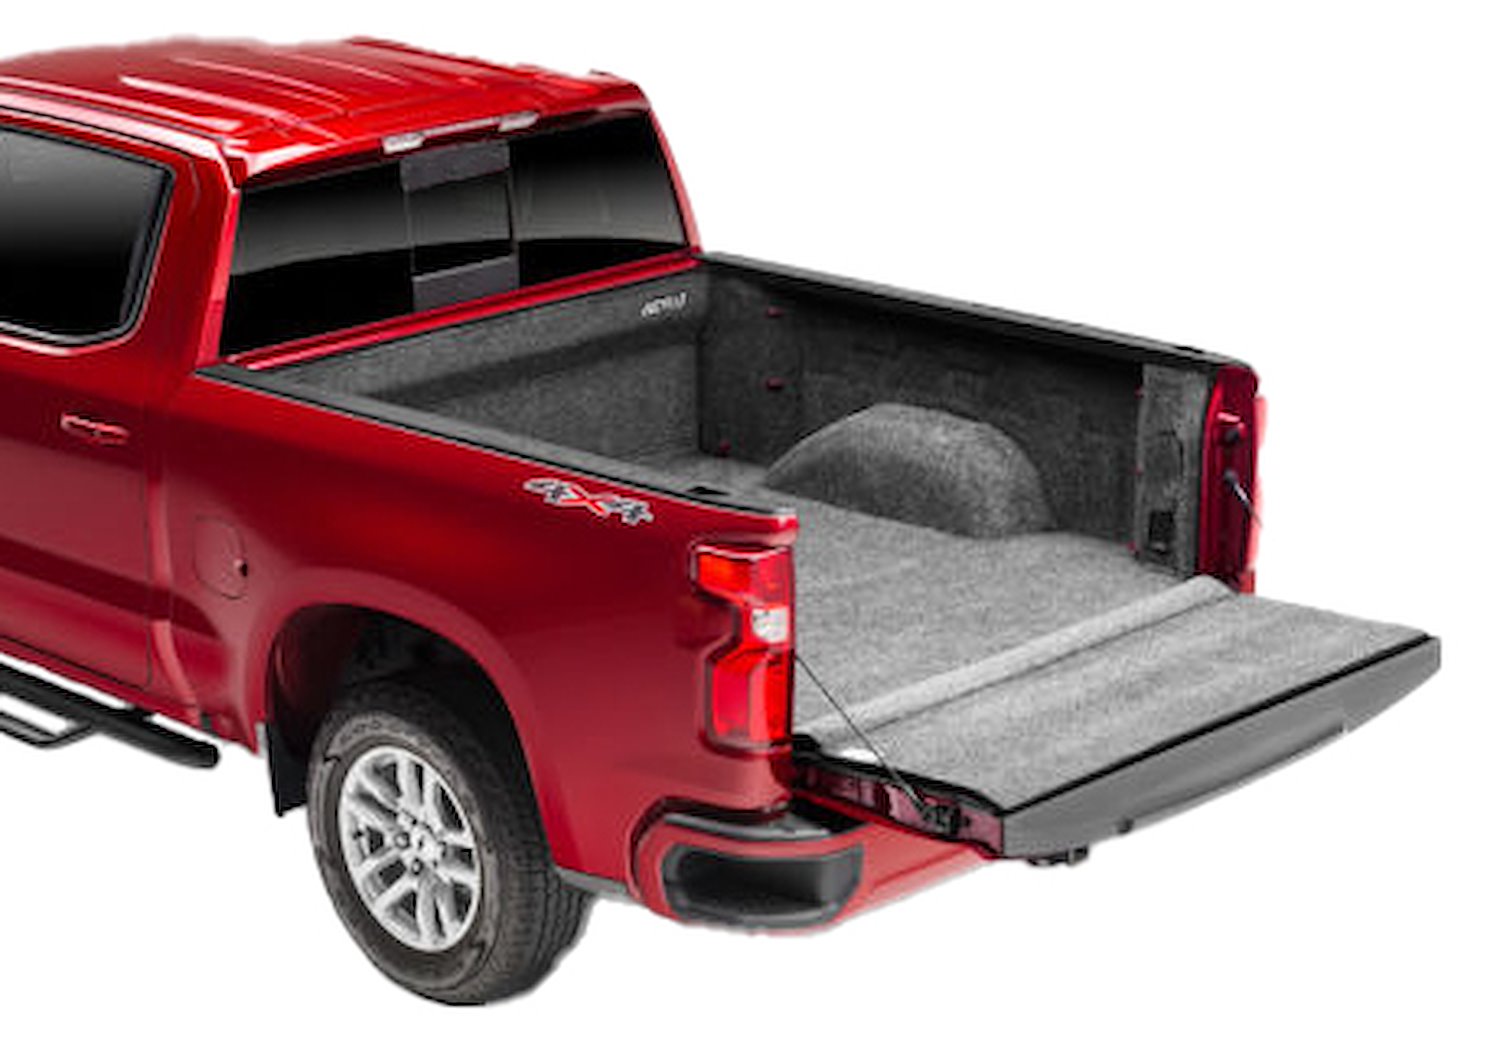 Full BedRug Liner for Late-Model Chevrolet Silverado, GMC Sierra 2500, 3500 HD Trucks with 8 ft. Bed [Gray]